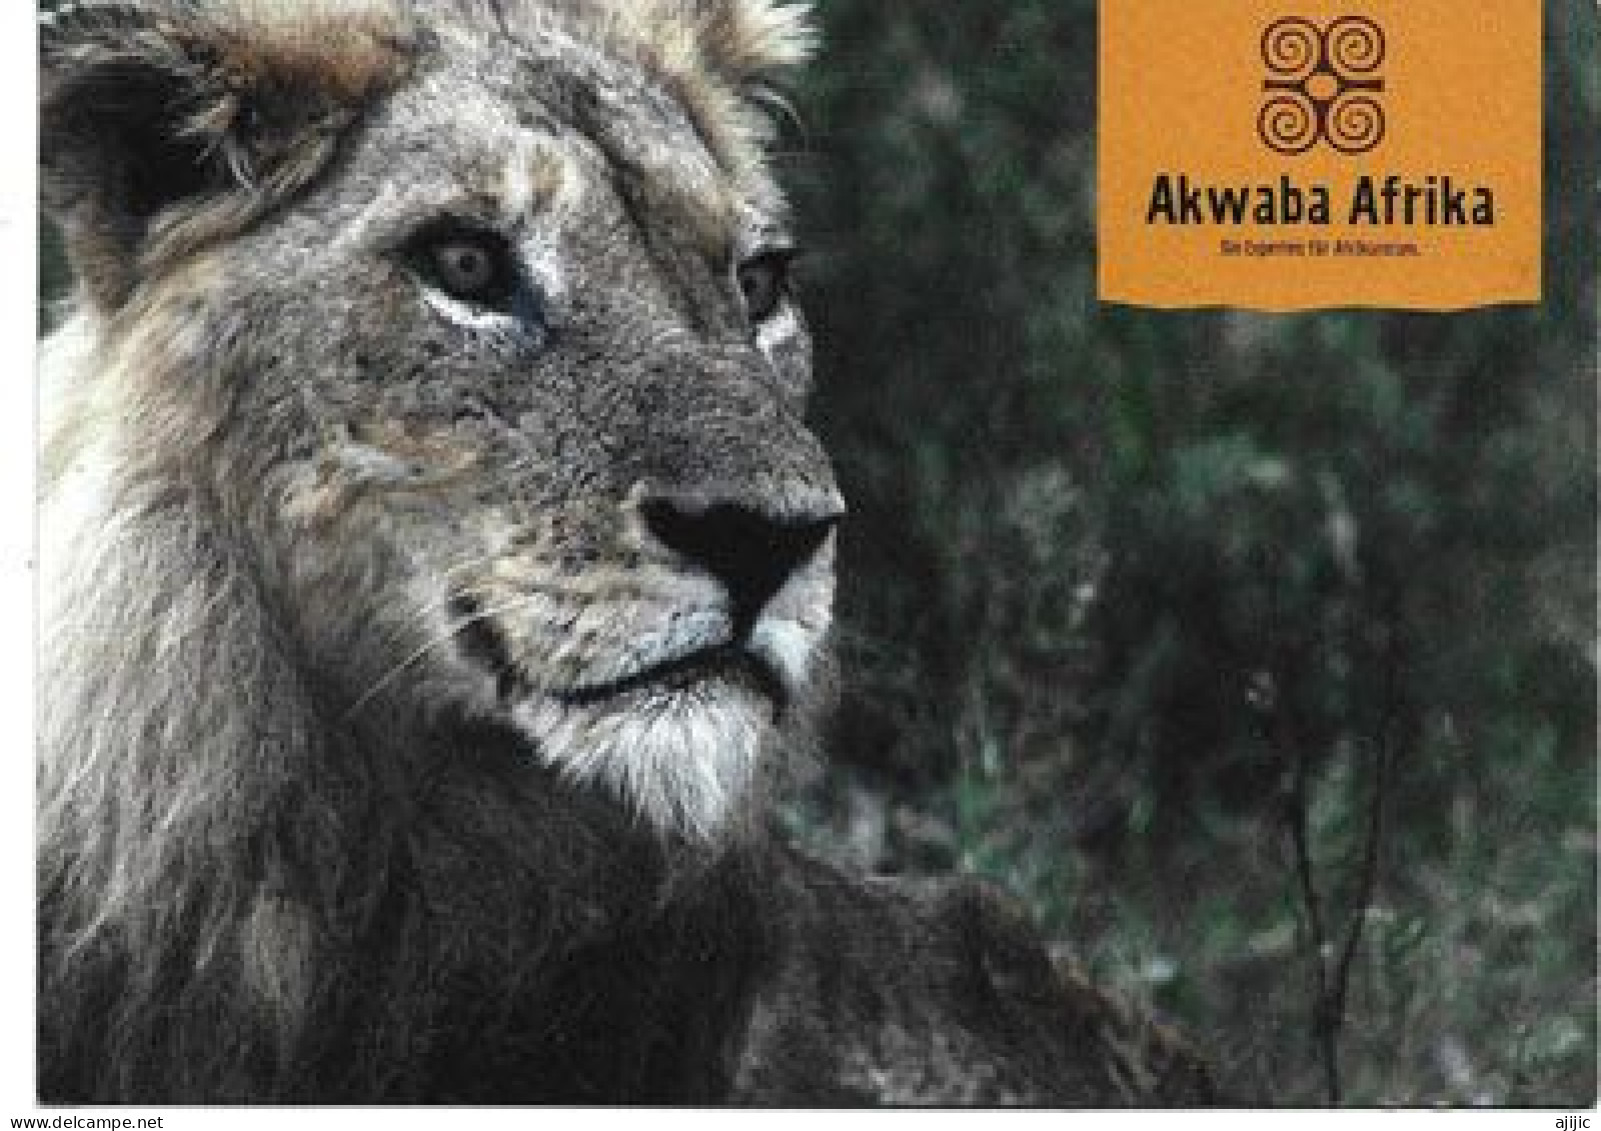 AKWABA AFRIKA  (LION)   Postcard.   New-unused - Löwen